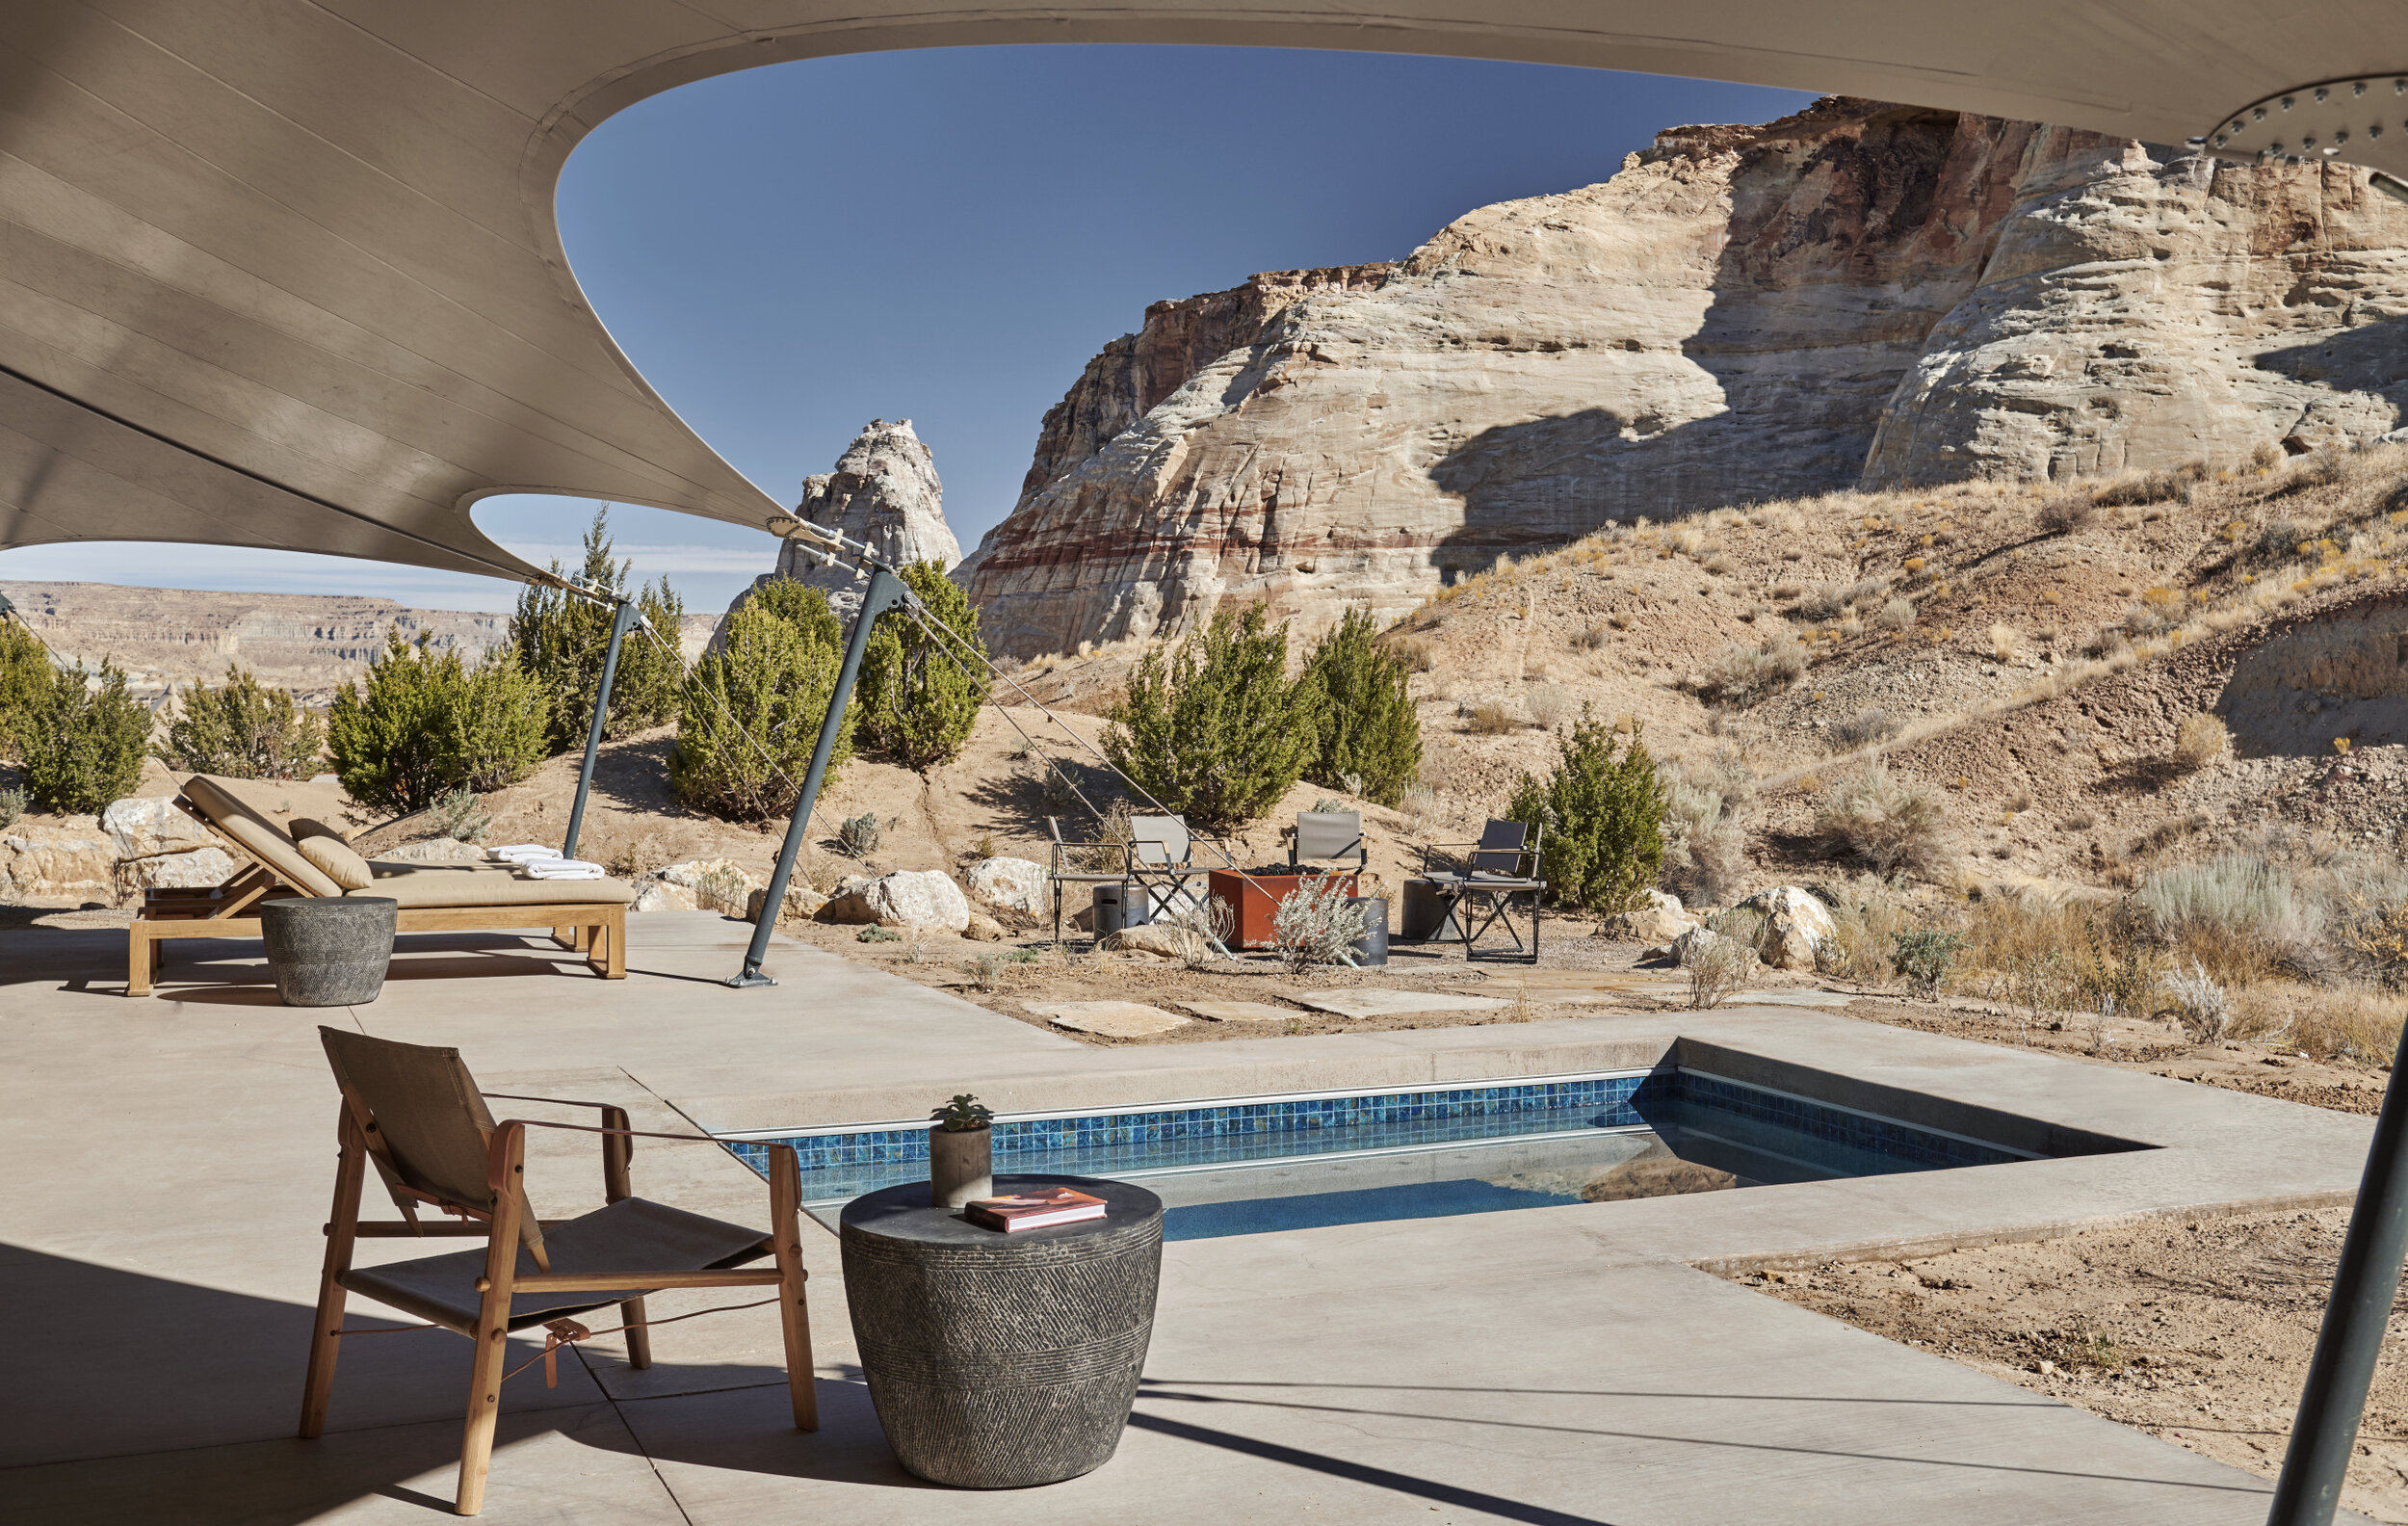 Glamp in Luxury in Utah's Stunning Desert Landscapes